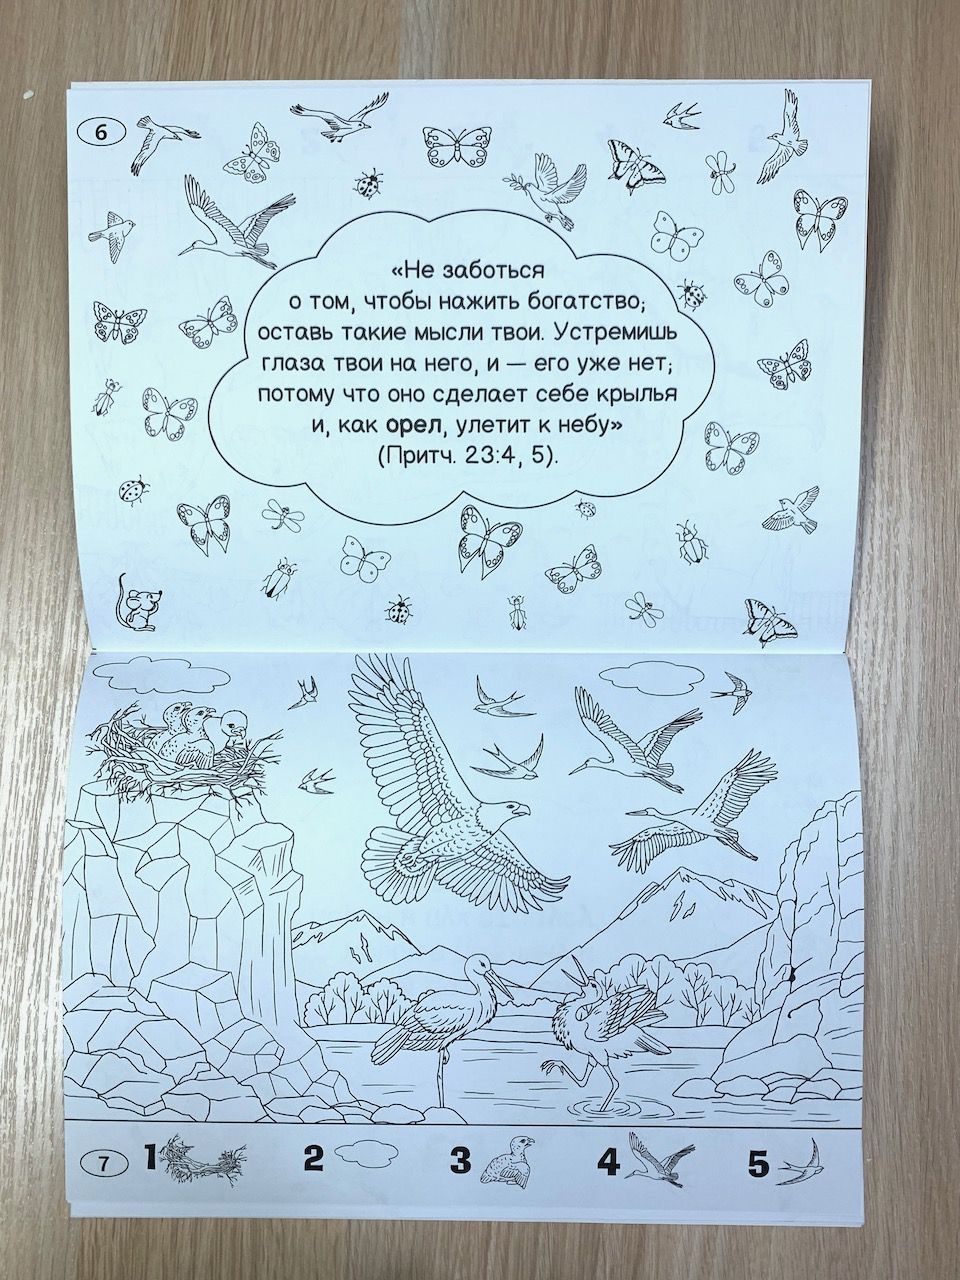 Животные и птицы в библии (книжка-раскраска). Серия раскрасок "Чудеса творения"